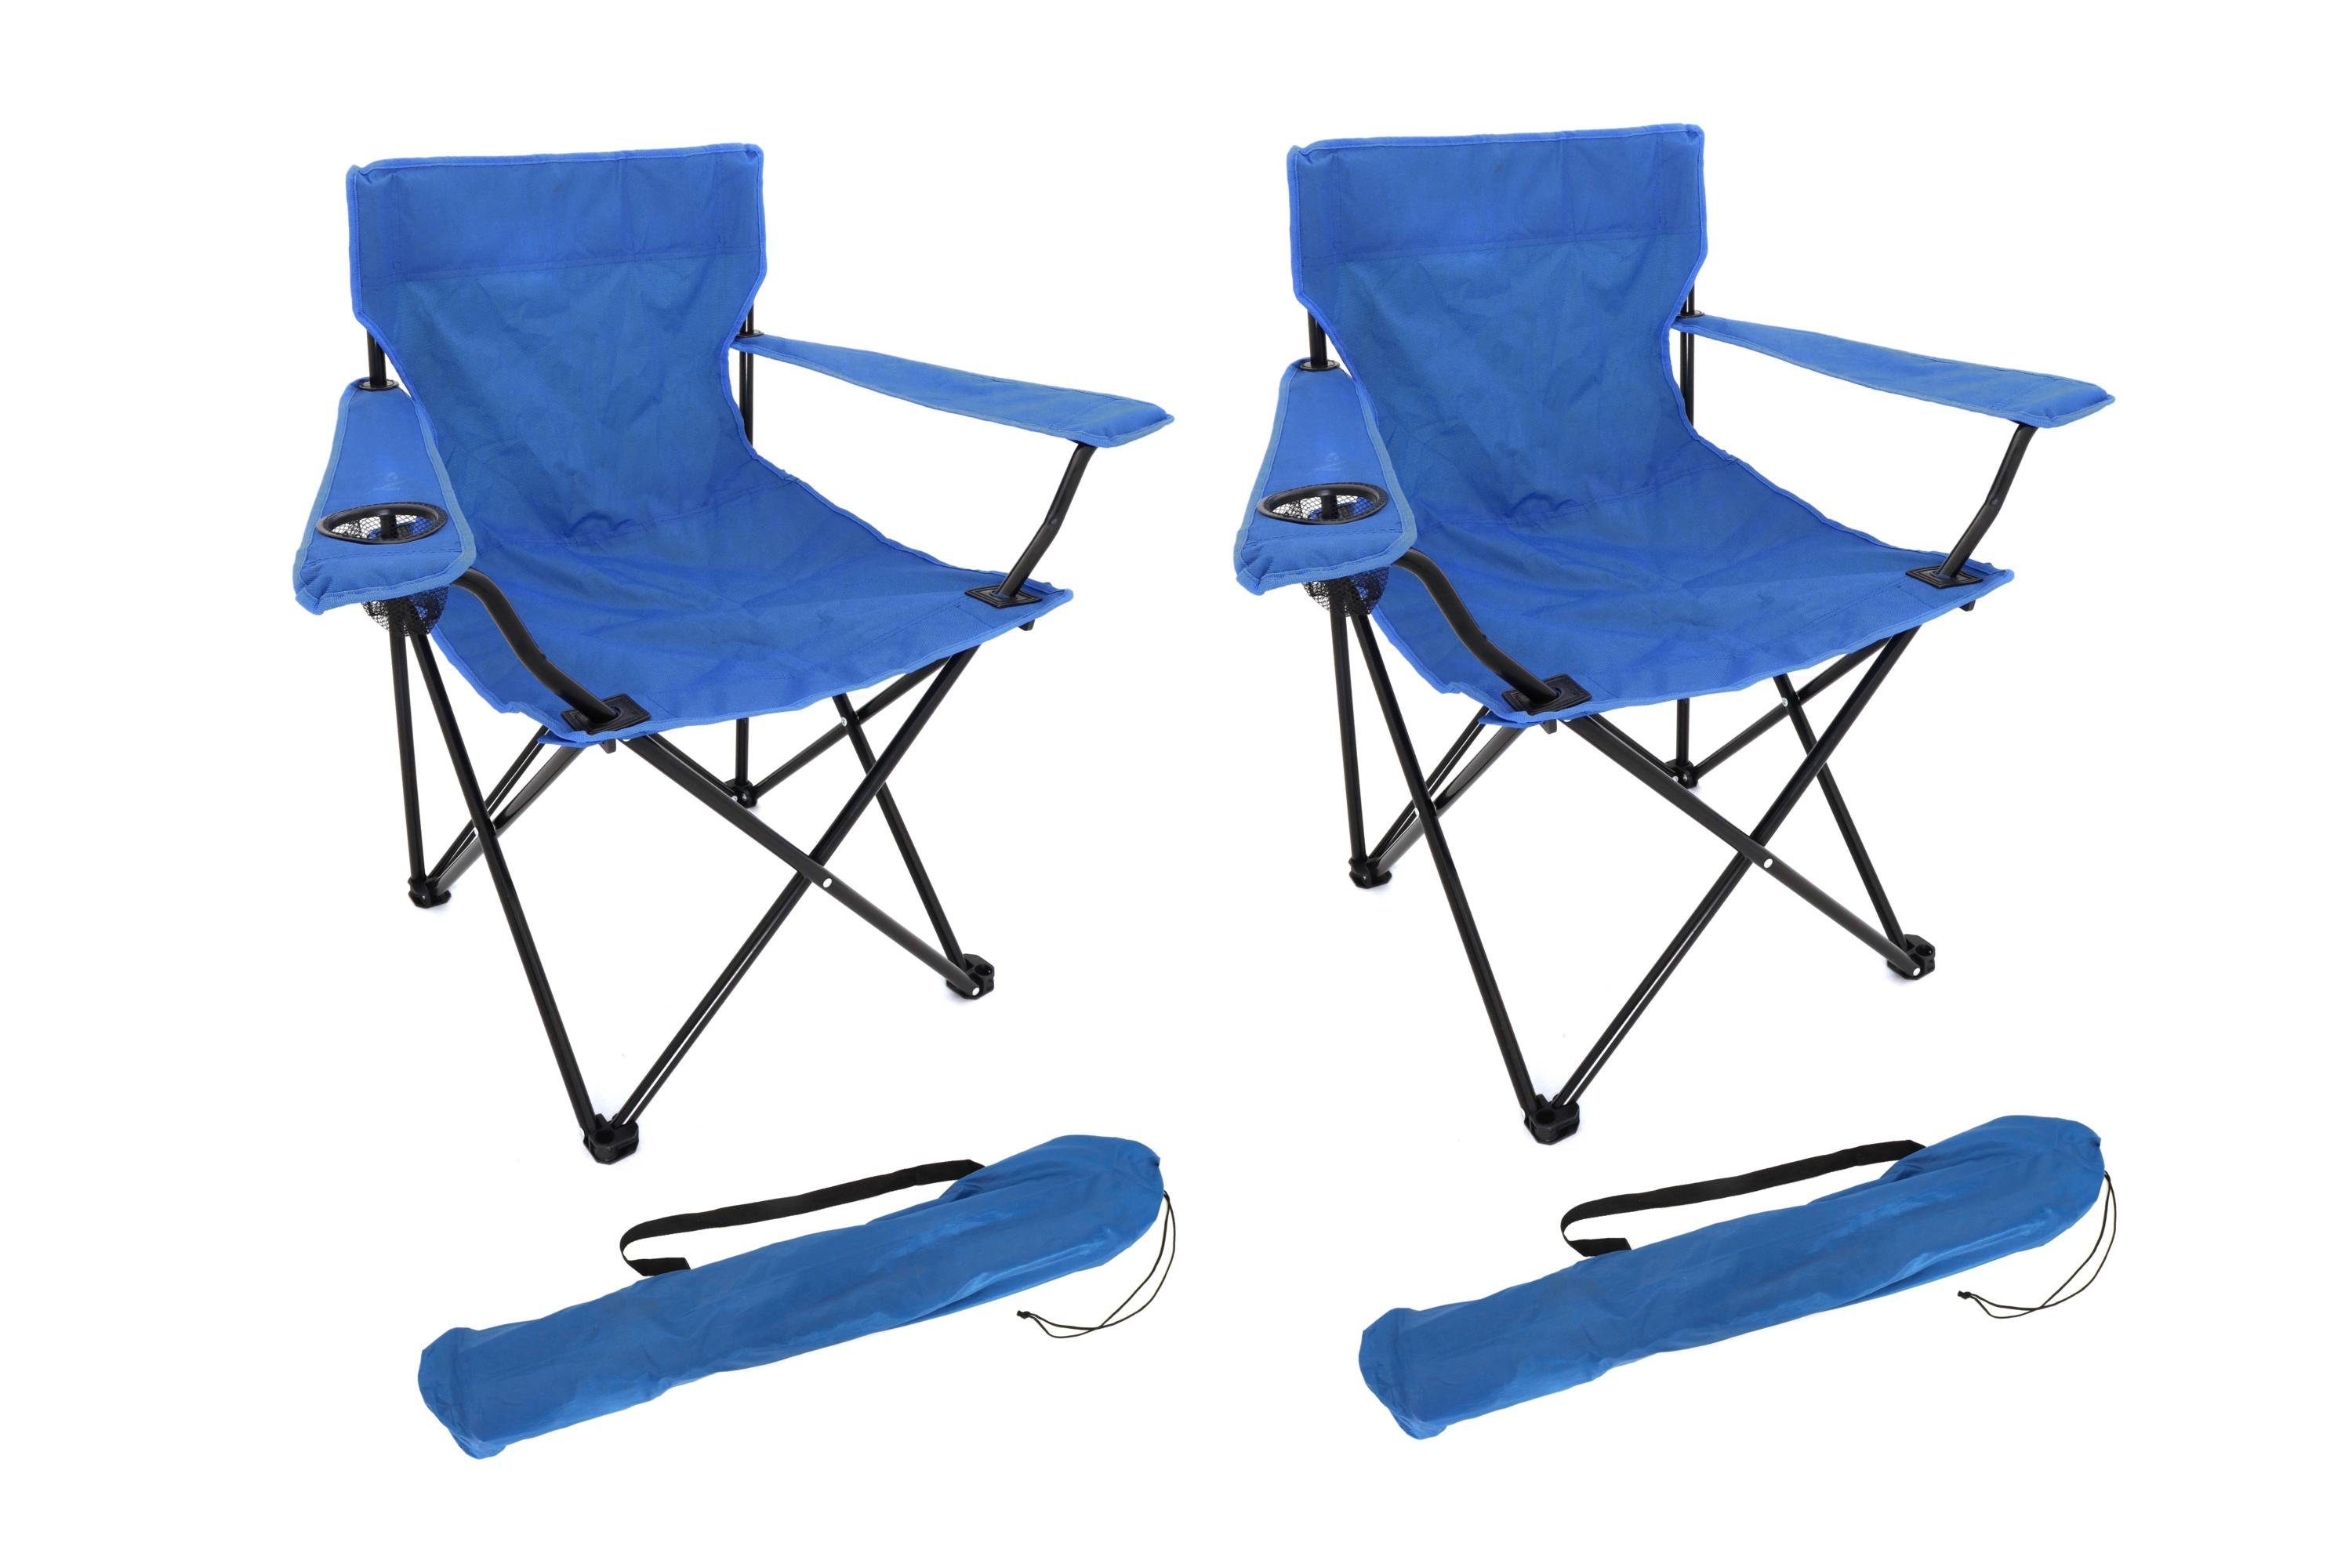 ELLUG Campingstuhl 2er Set Anglerstuhl Campingsessel blau, leicht, klappbar mit Tragetasche & Getränkehalter 50 * 50 * 80cm bis 100kg belastbar, für Festival, Reise, Urlaub, Camping, Angeln, 2er Set